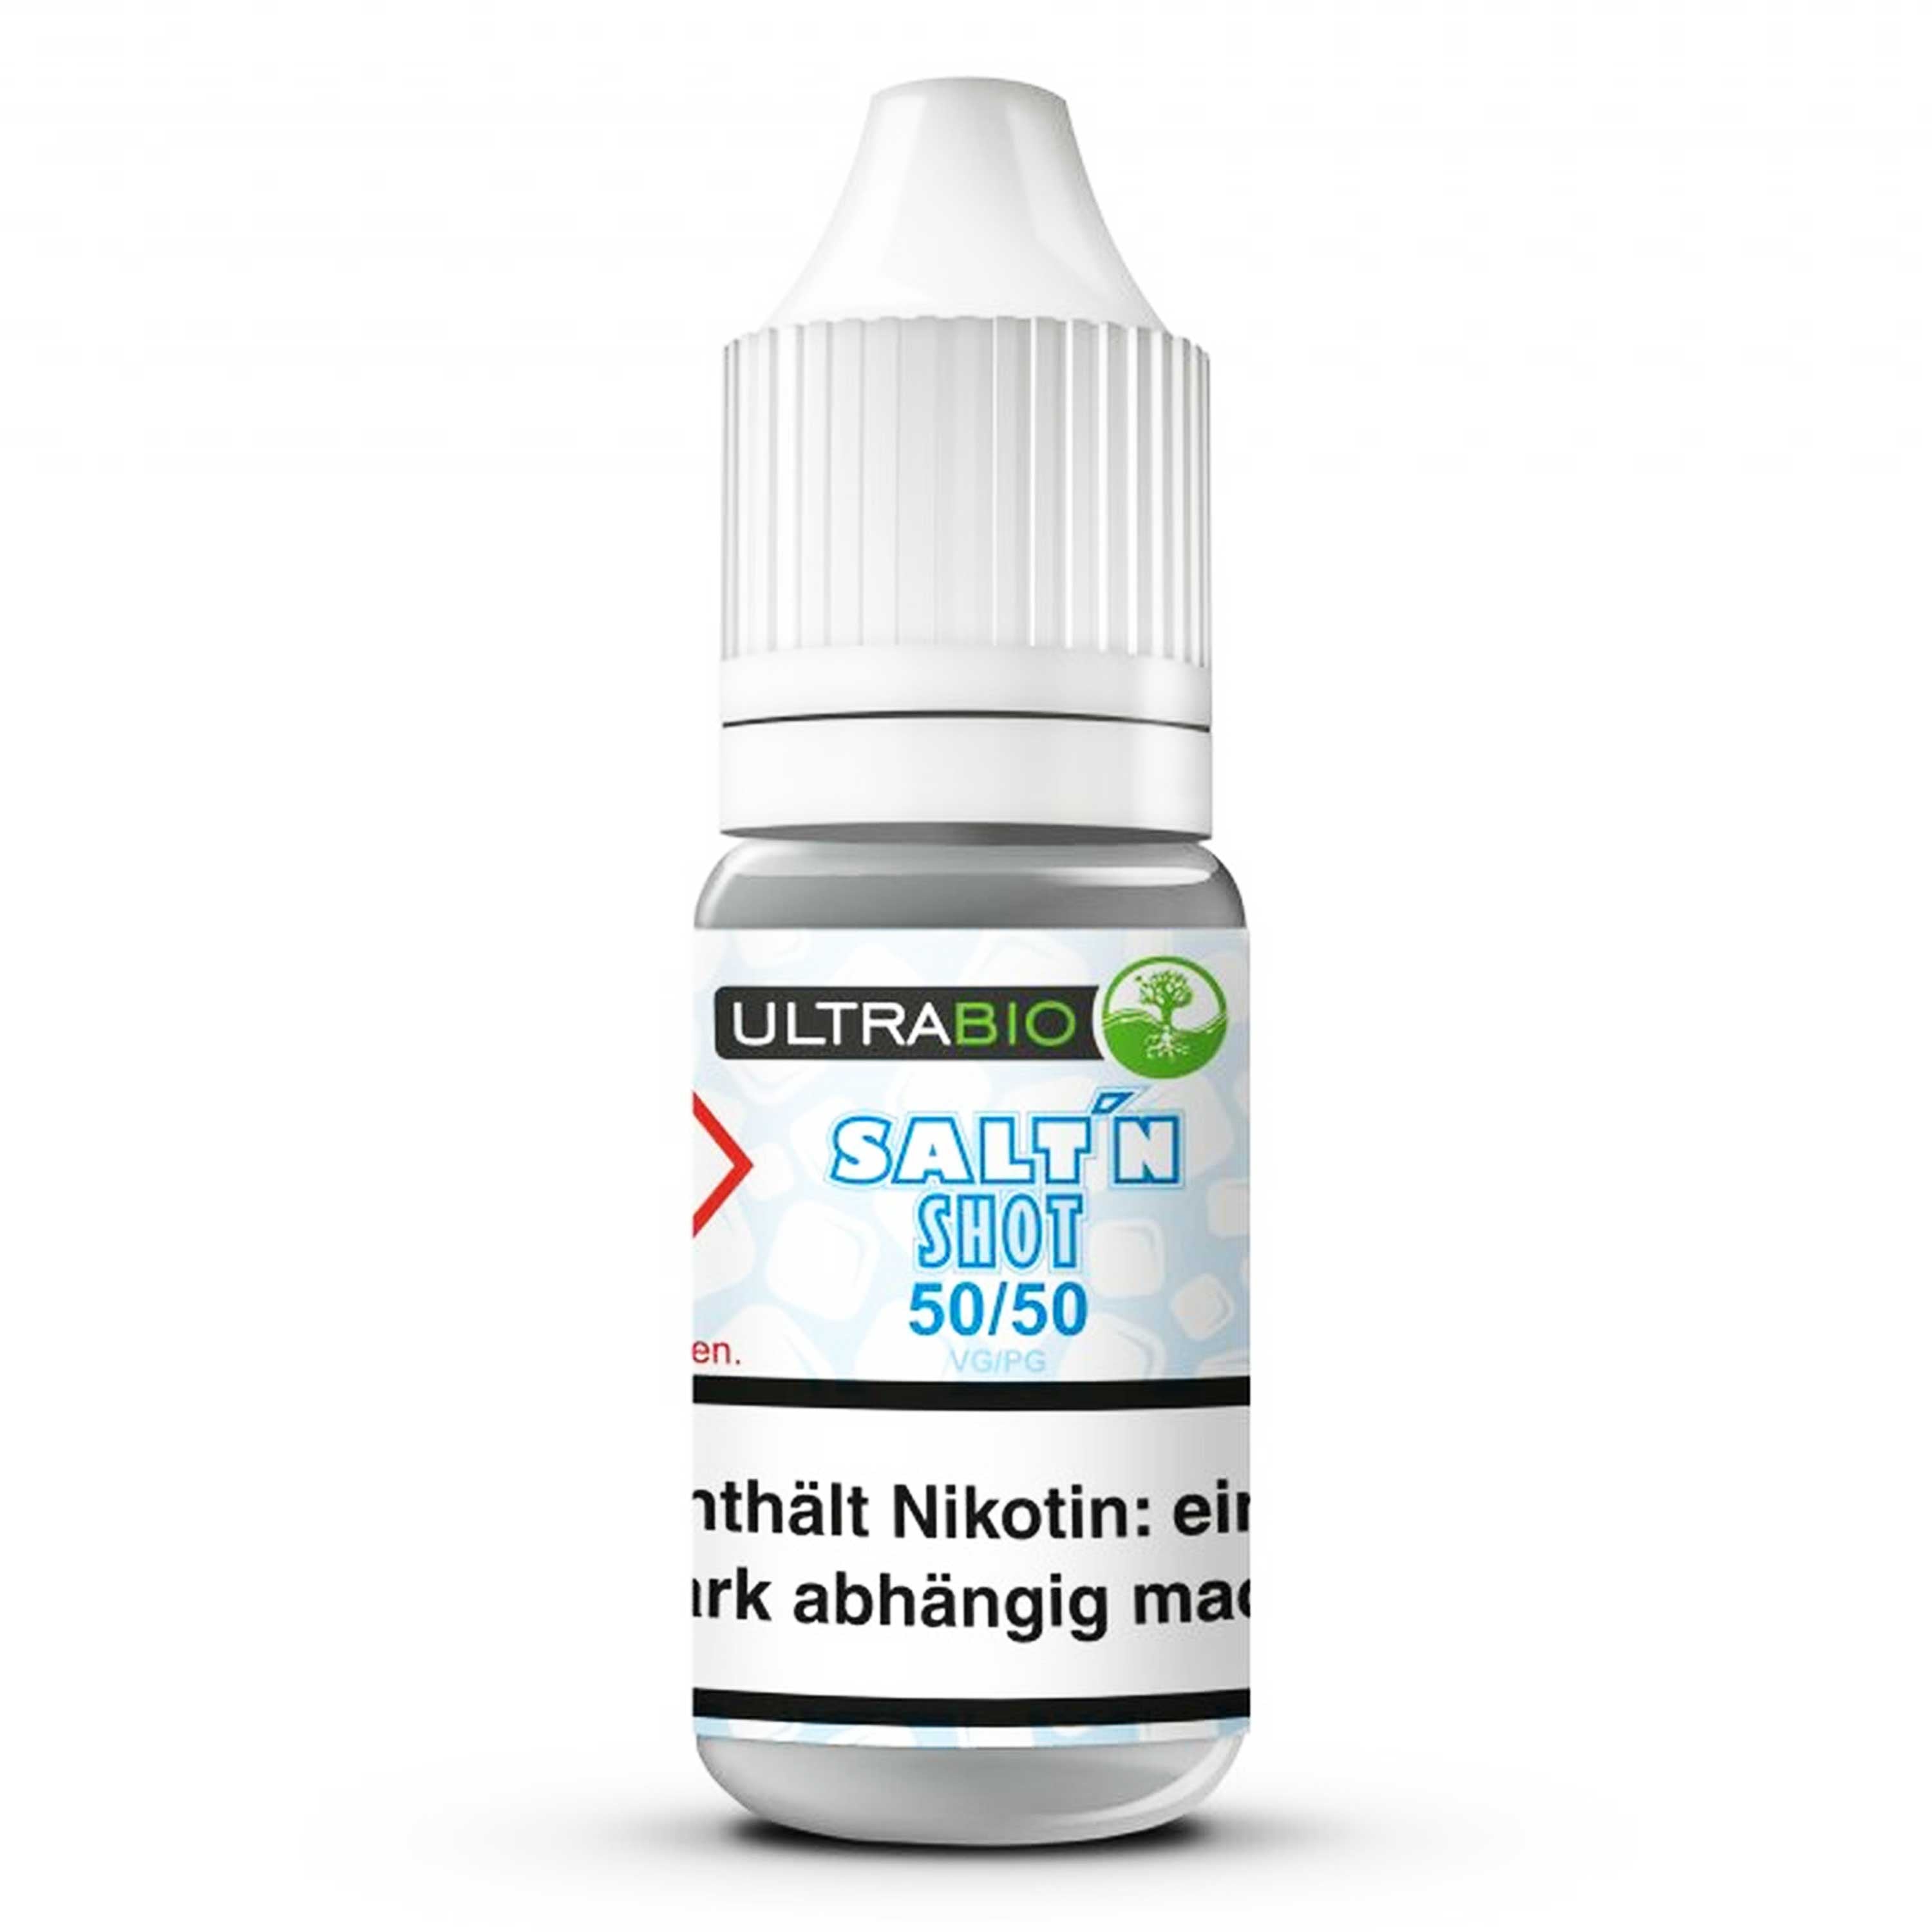 Ultrabio -  Nikotinsalz Shot VPG 50/50 (20 mg/ml Nikotin)